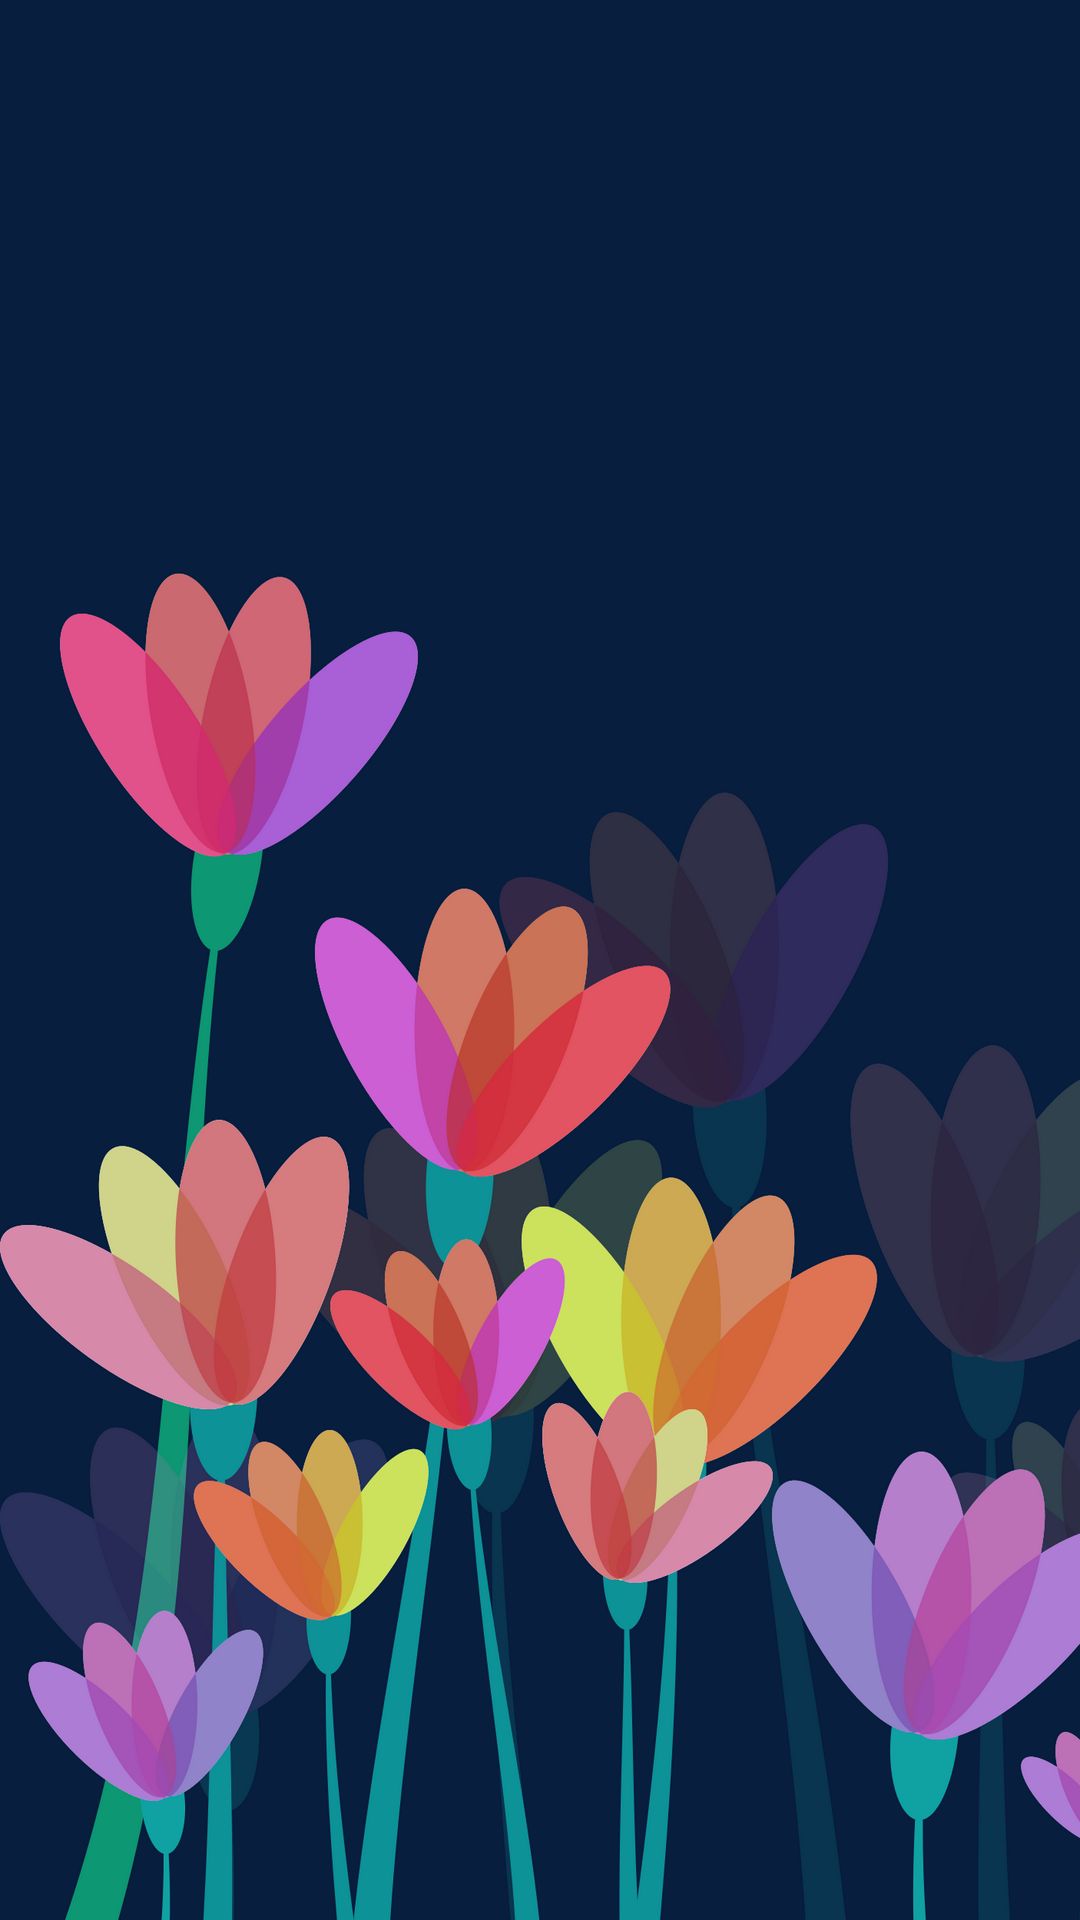 Mùa xuân đang đến gần rồi, và hãy để một bức ảnh nền màu tươi sáng, ấn tượng về colorful flowers wallpaper đem đến cho bạn sự tươi vui và yêu đời. Hình ảnh liên quan mang đến cho bạn những loại hoa đa dạng kích thích giác quan và cảm nhận cuộc sống tươi đẹp hơn.